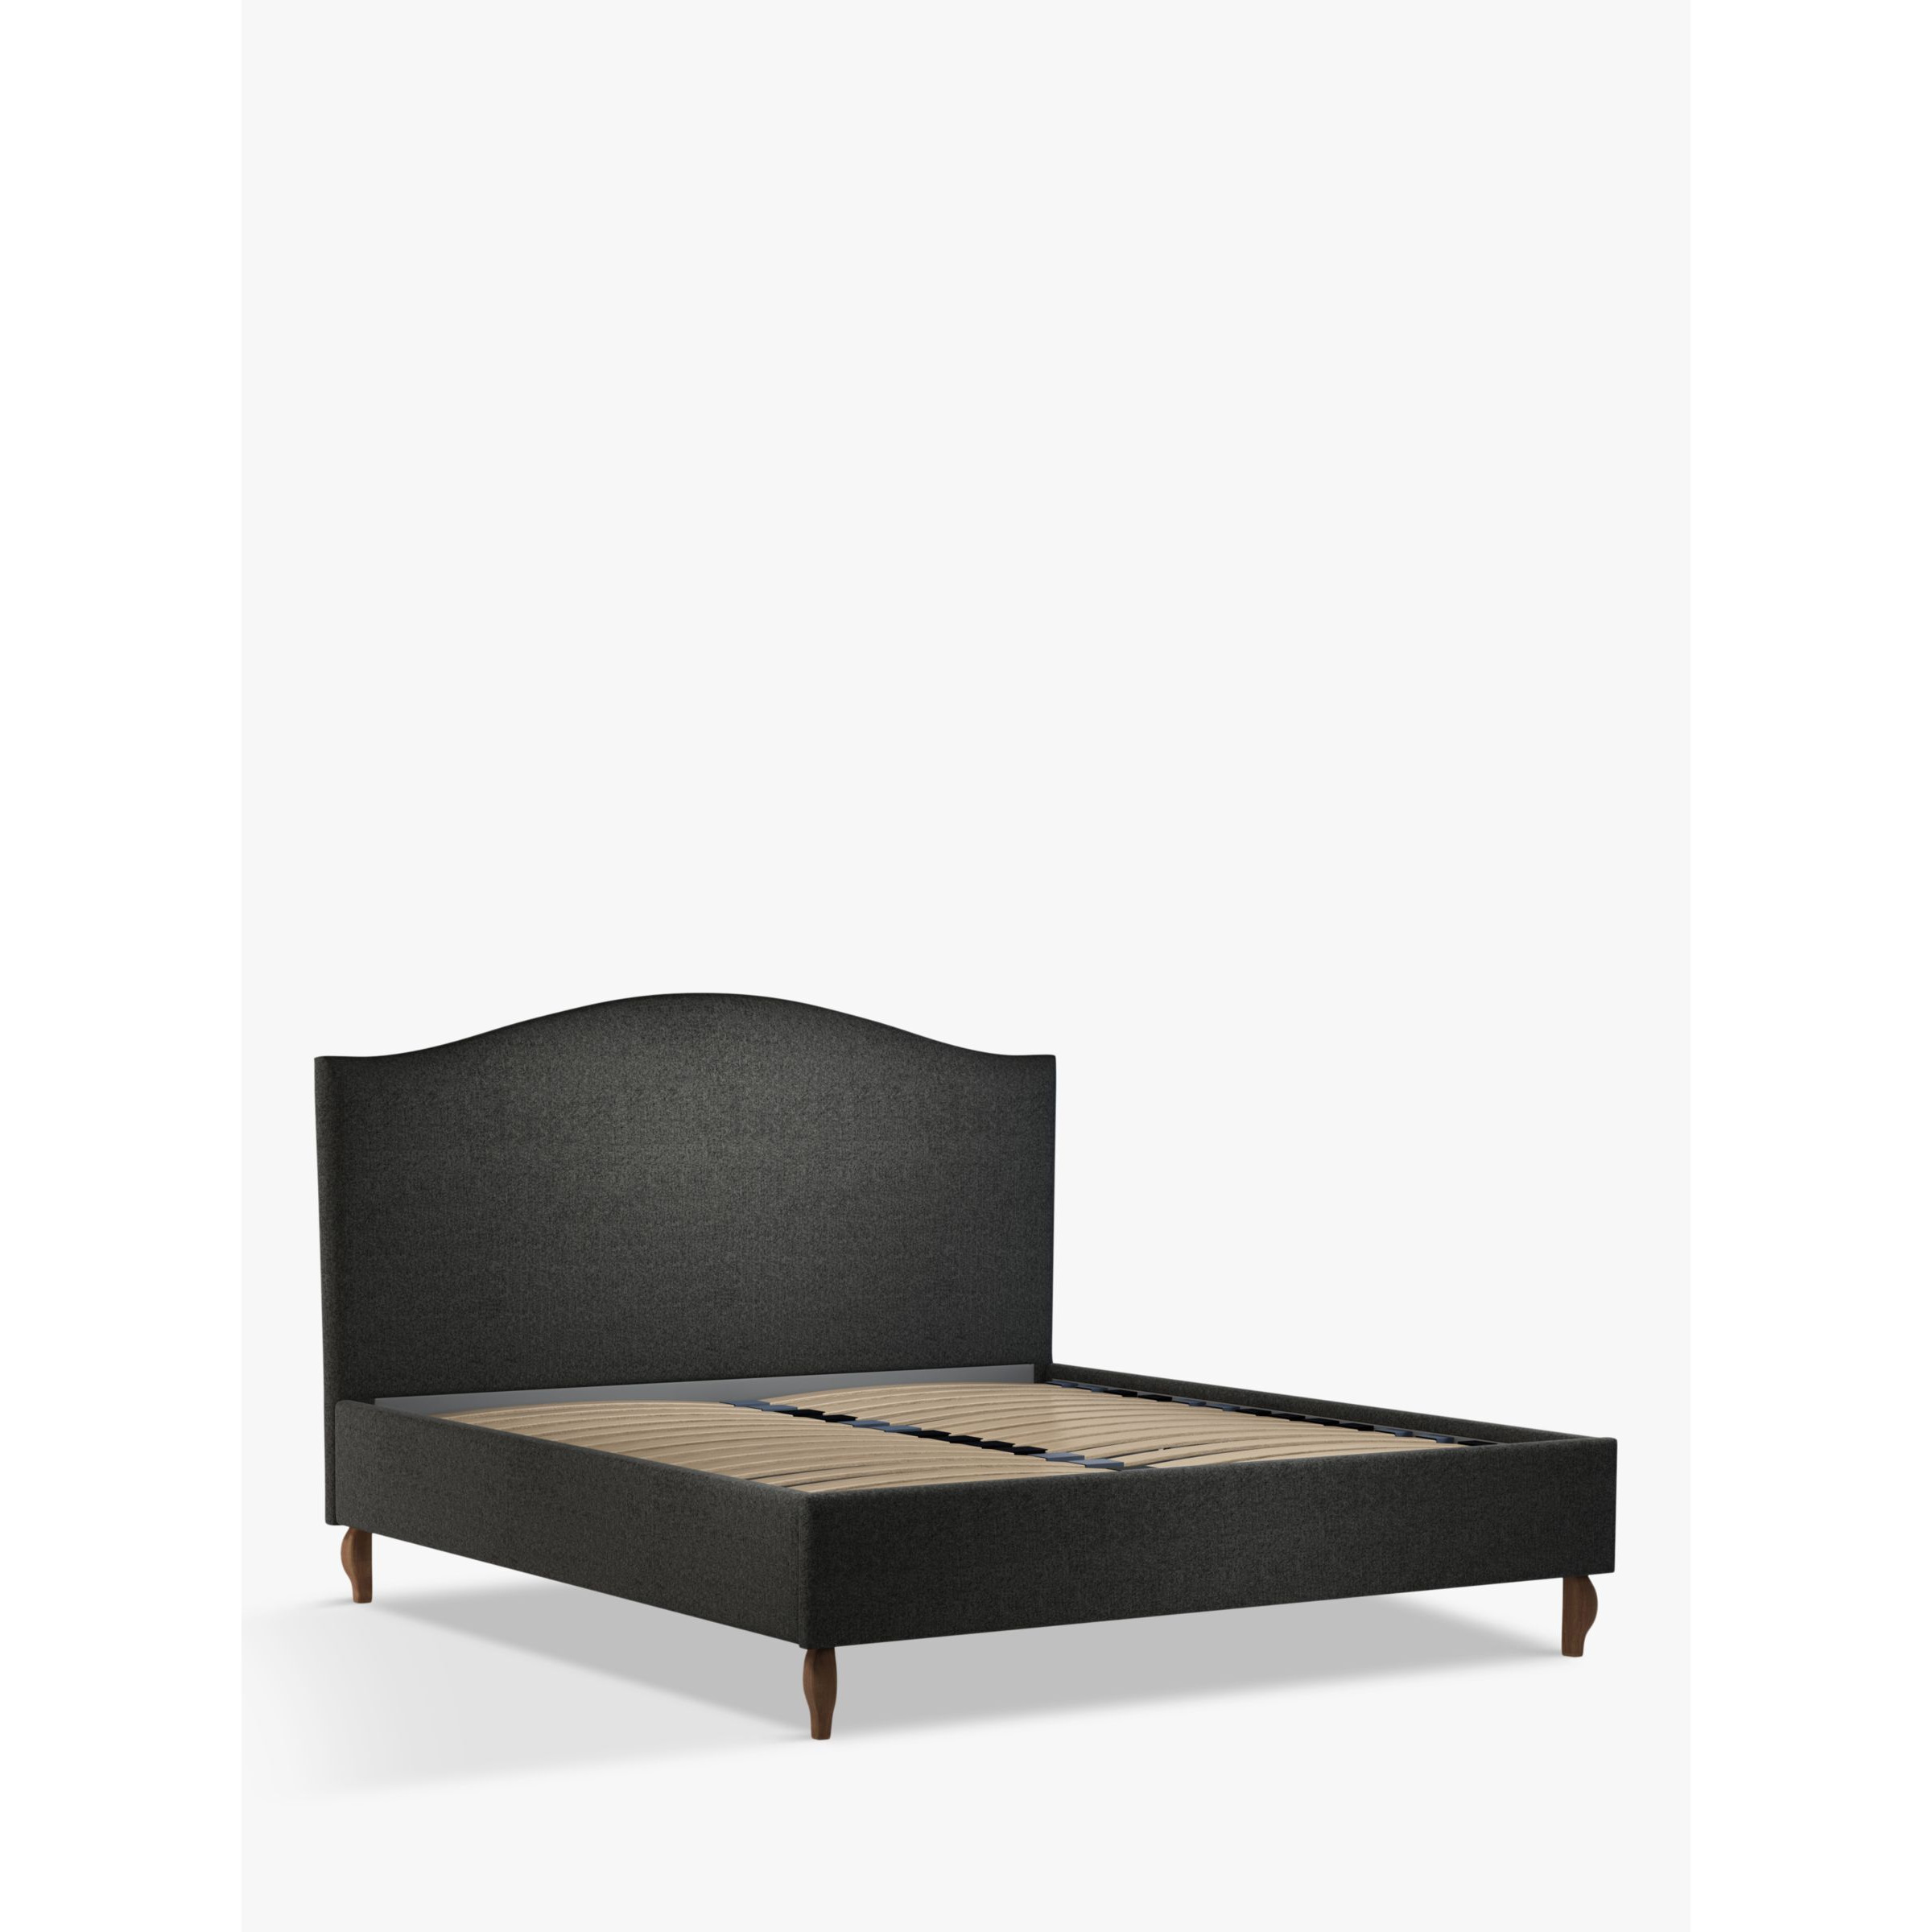 John Lewis Charlotte Upholstered Bed Frame, Super King Size - image 1